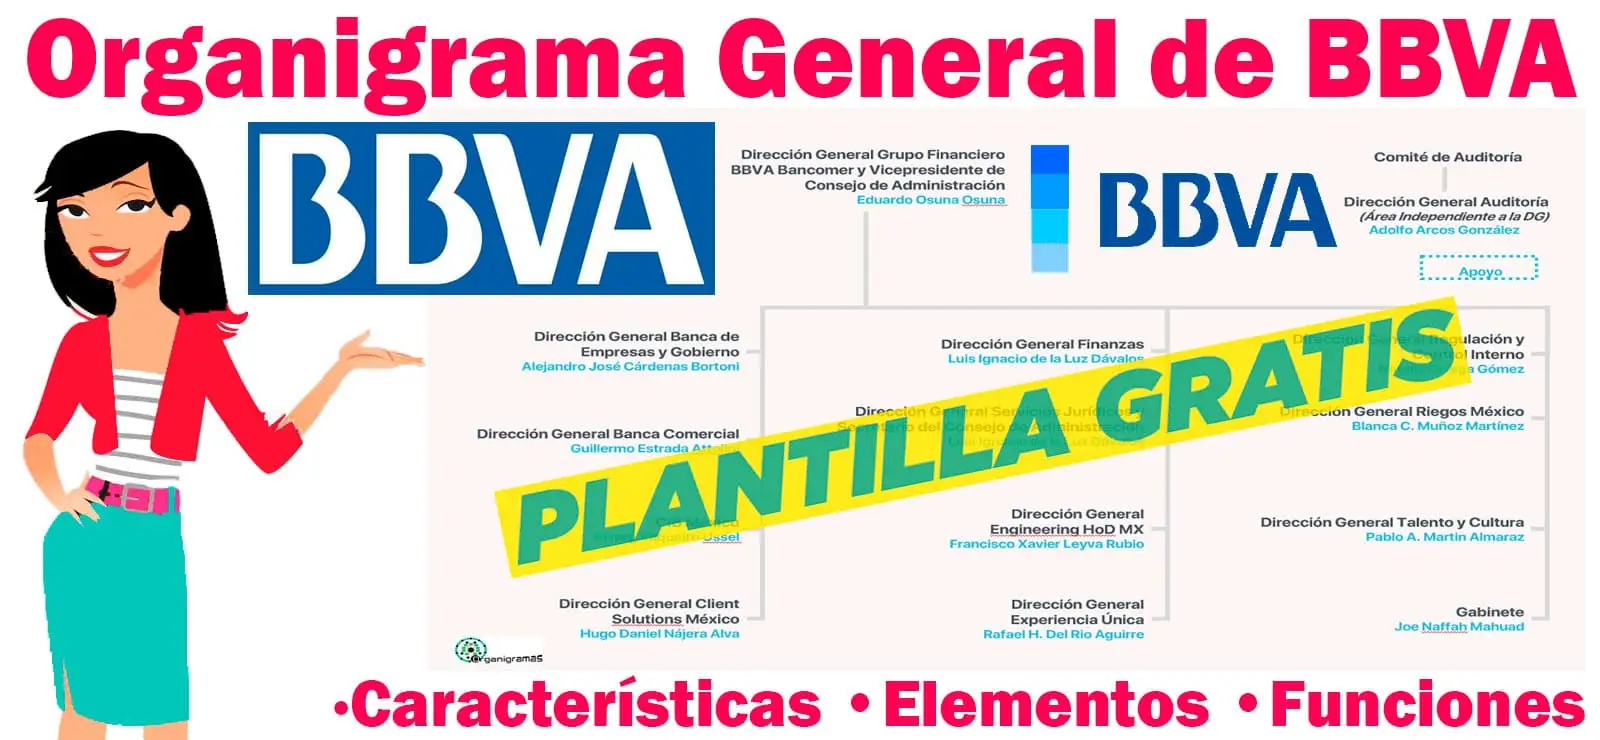 Organigrama General de BBVA - Características, Elementos y Funciones - Incluye Plantilla Gratis | Sitio Web Oficial organigramas.com.es